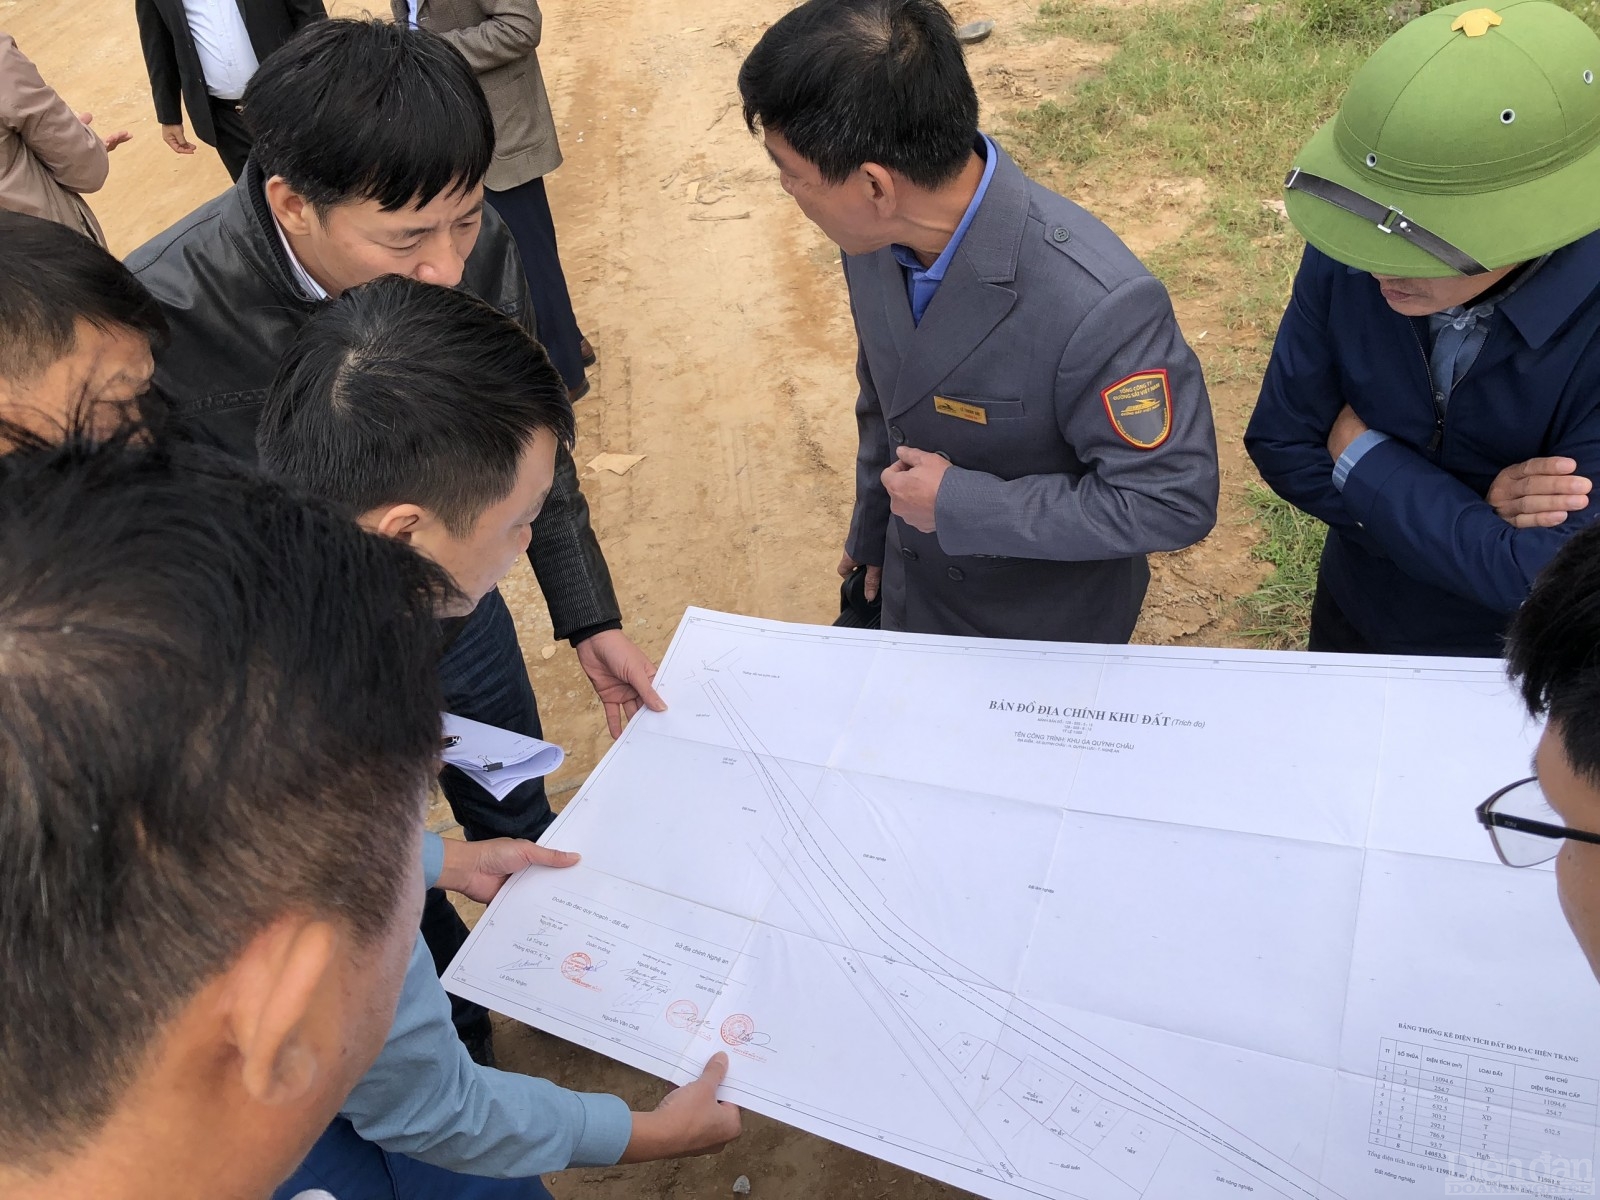 Tình trạng đưa cả đất hành lang bảo vệ ATGT đường sắt để cấp quyền sử dụng đất cho hộ dân trên địa thị xã Thái Hoà diễn ra với số lượng hàng chục hộ